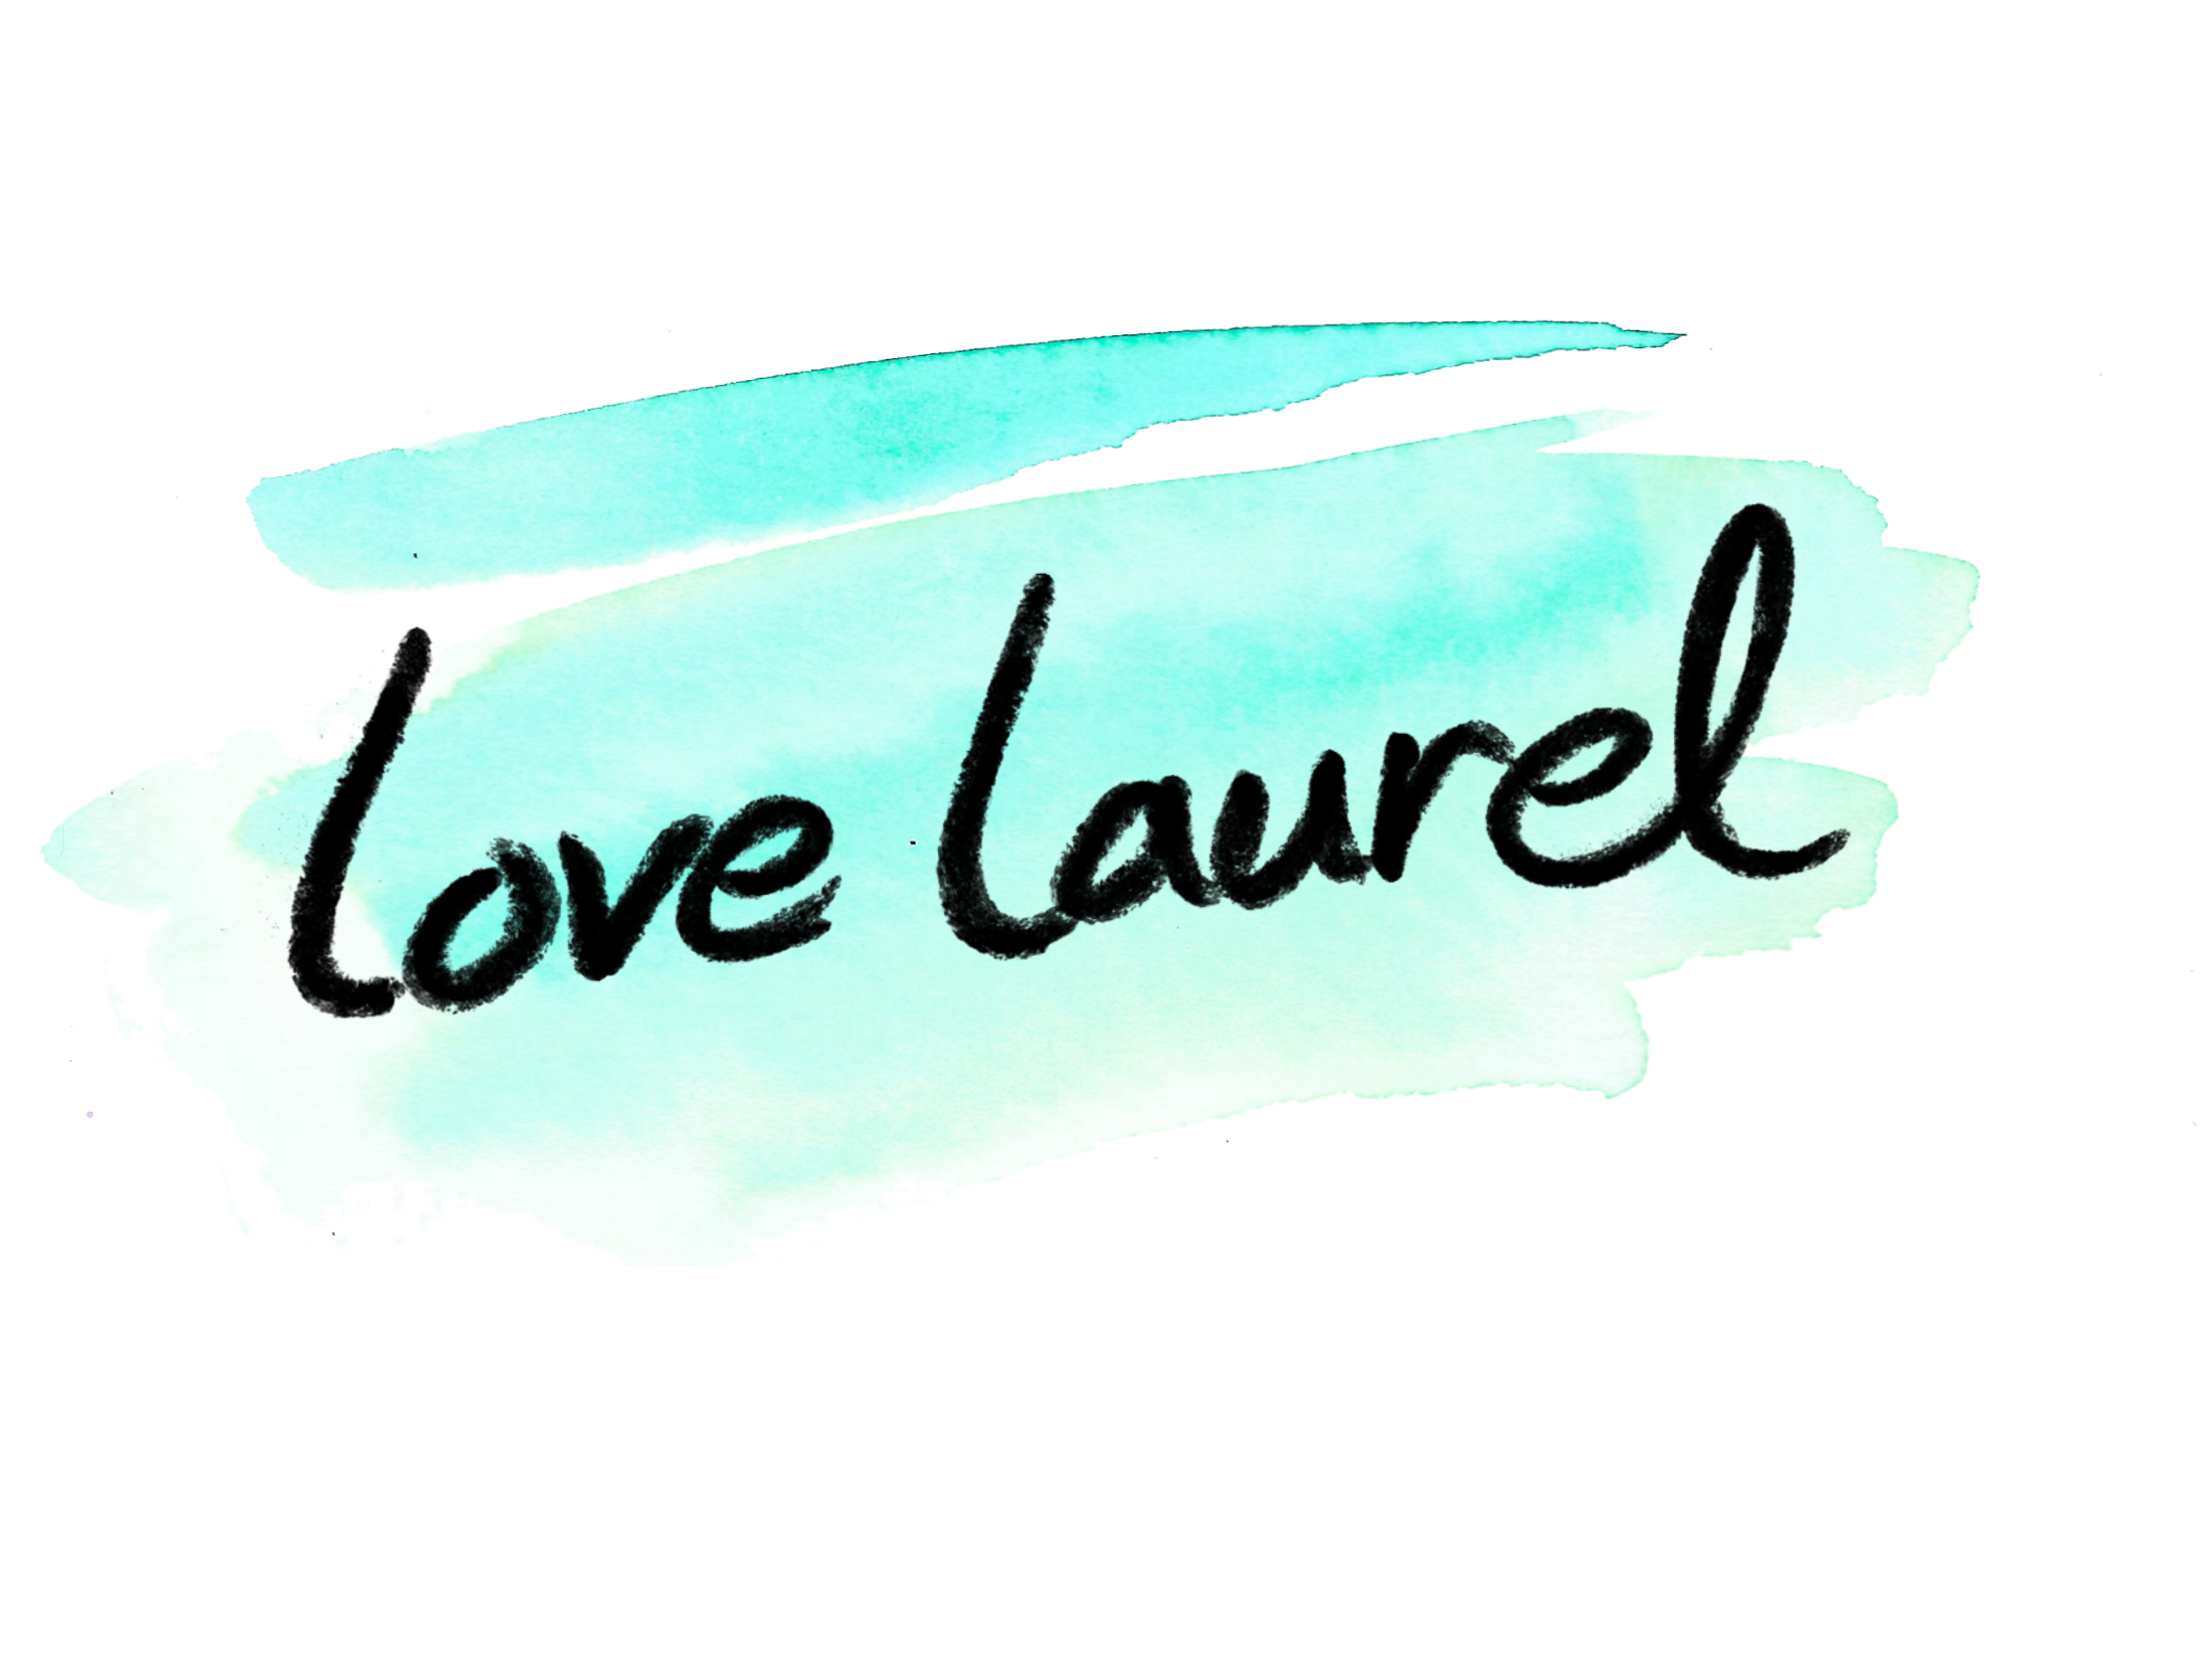              lovelaurel